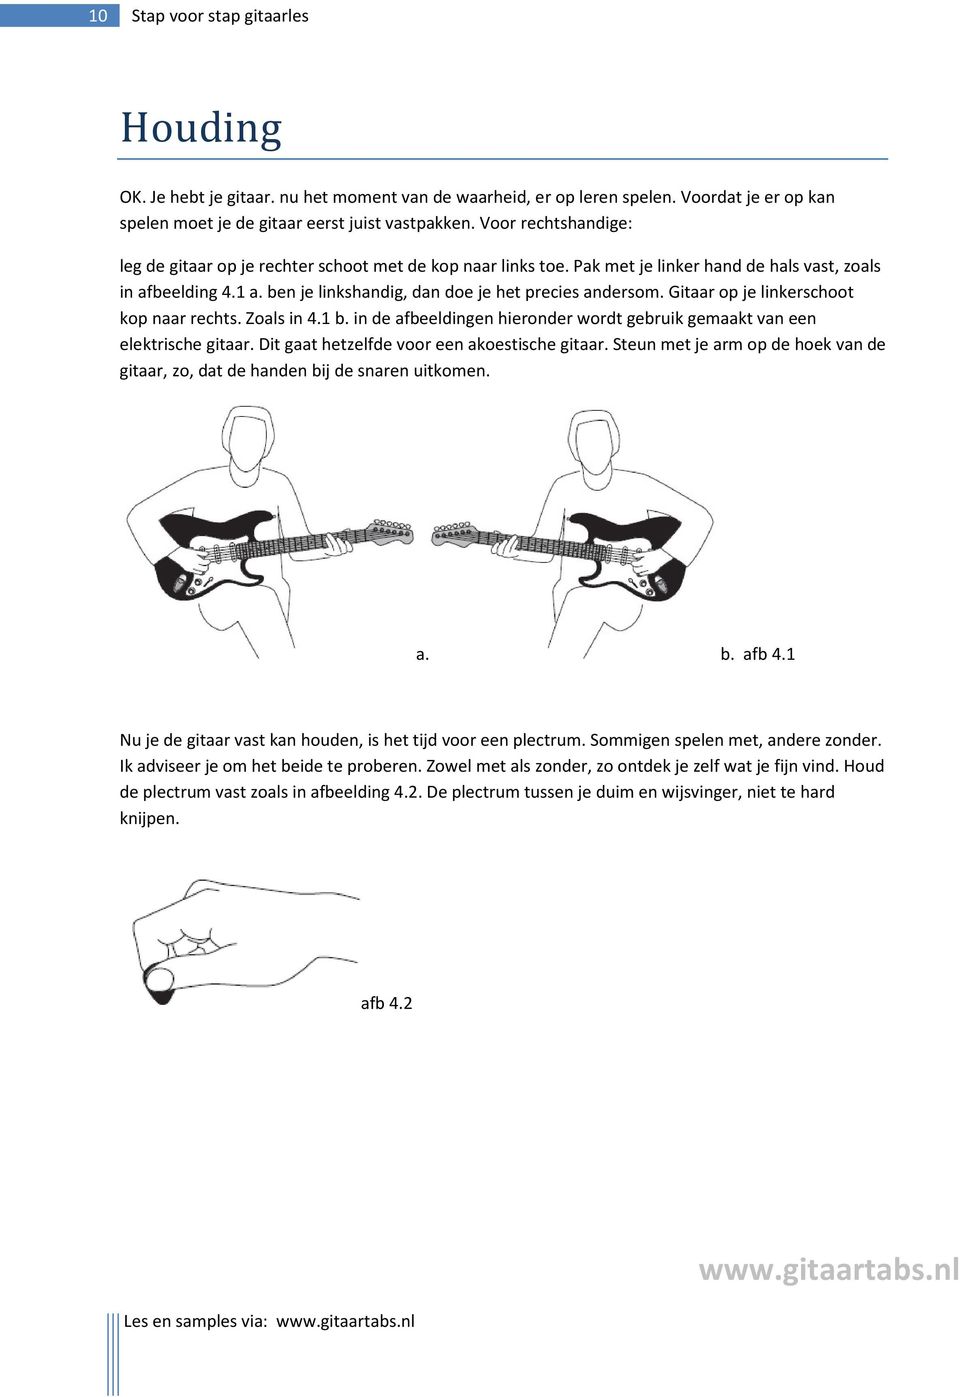 Gitaar op je linkerschoot kop naar rechts. Zoals in 4.1 b. in de afbeeldingen hieronder wordt gebruik gemaakt van een elektrische gitaar. Dit gaat hetzelfde voor een akoestische gitaar.